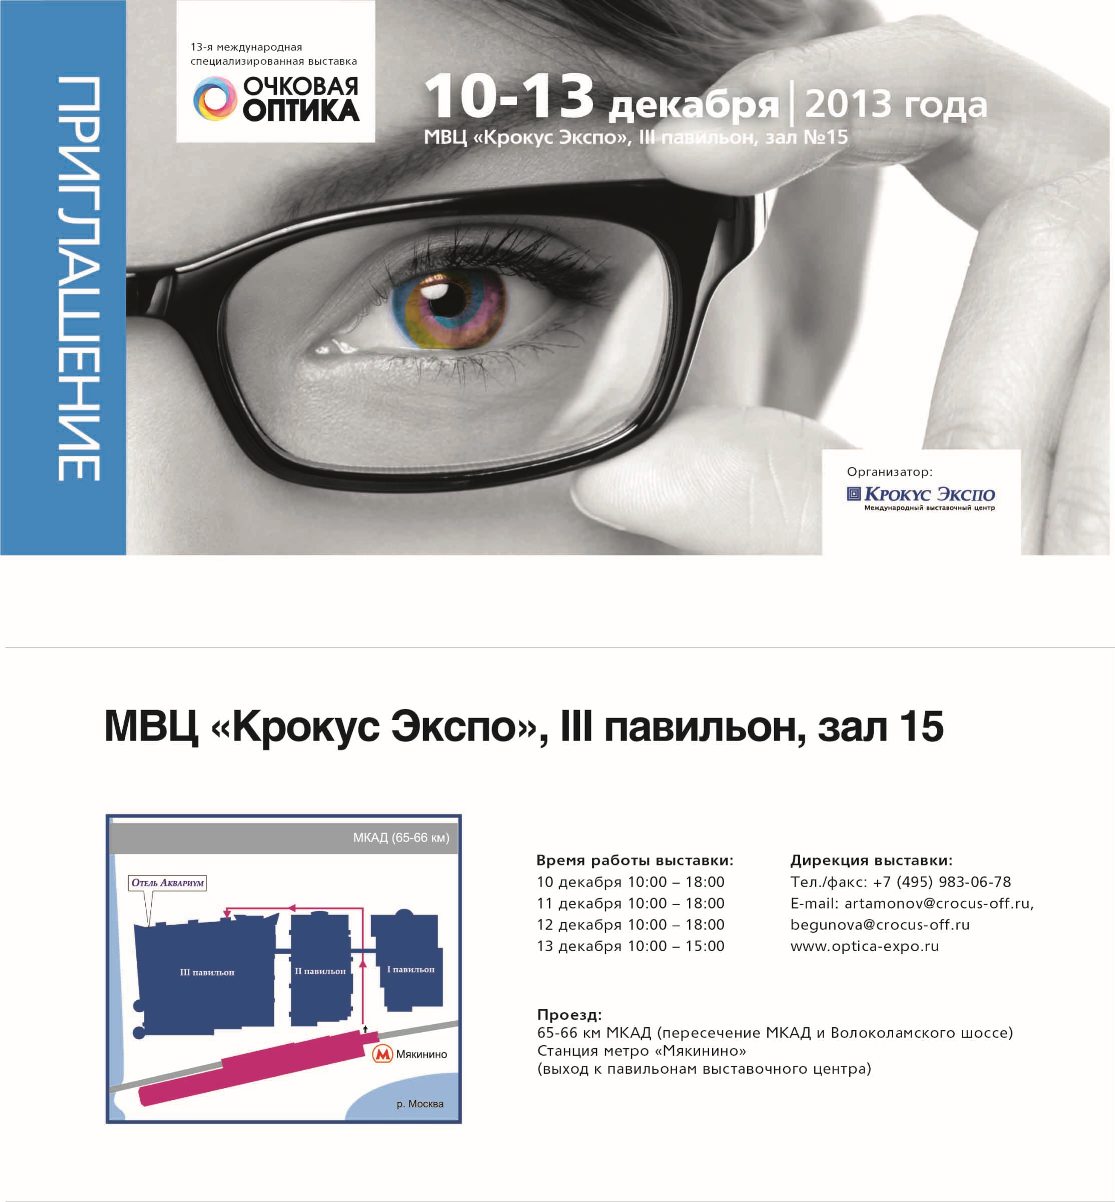 Электронный билет на выставку Очковая Оптика. Крокус Экспо. 10-13 декабря 2013